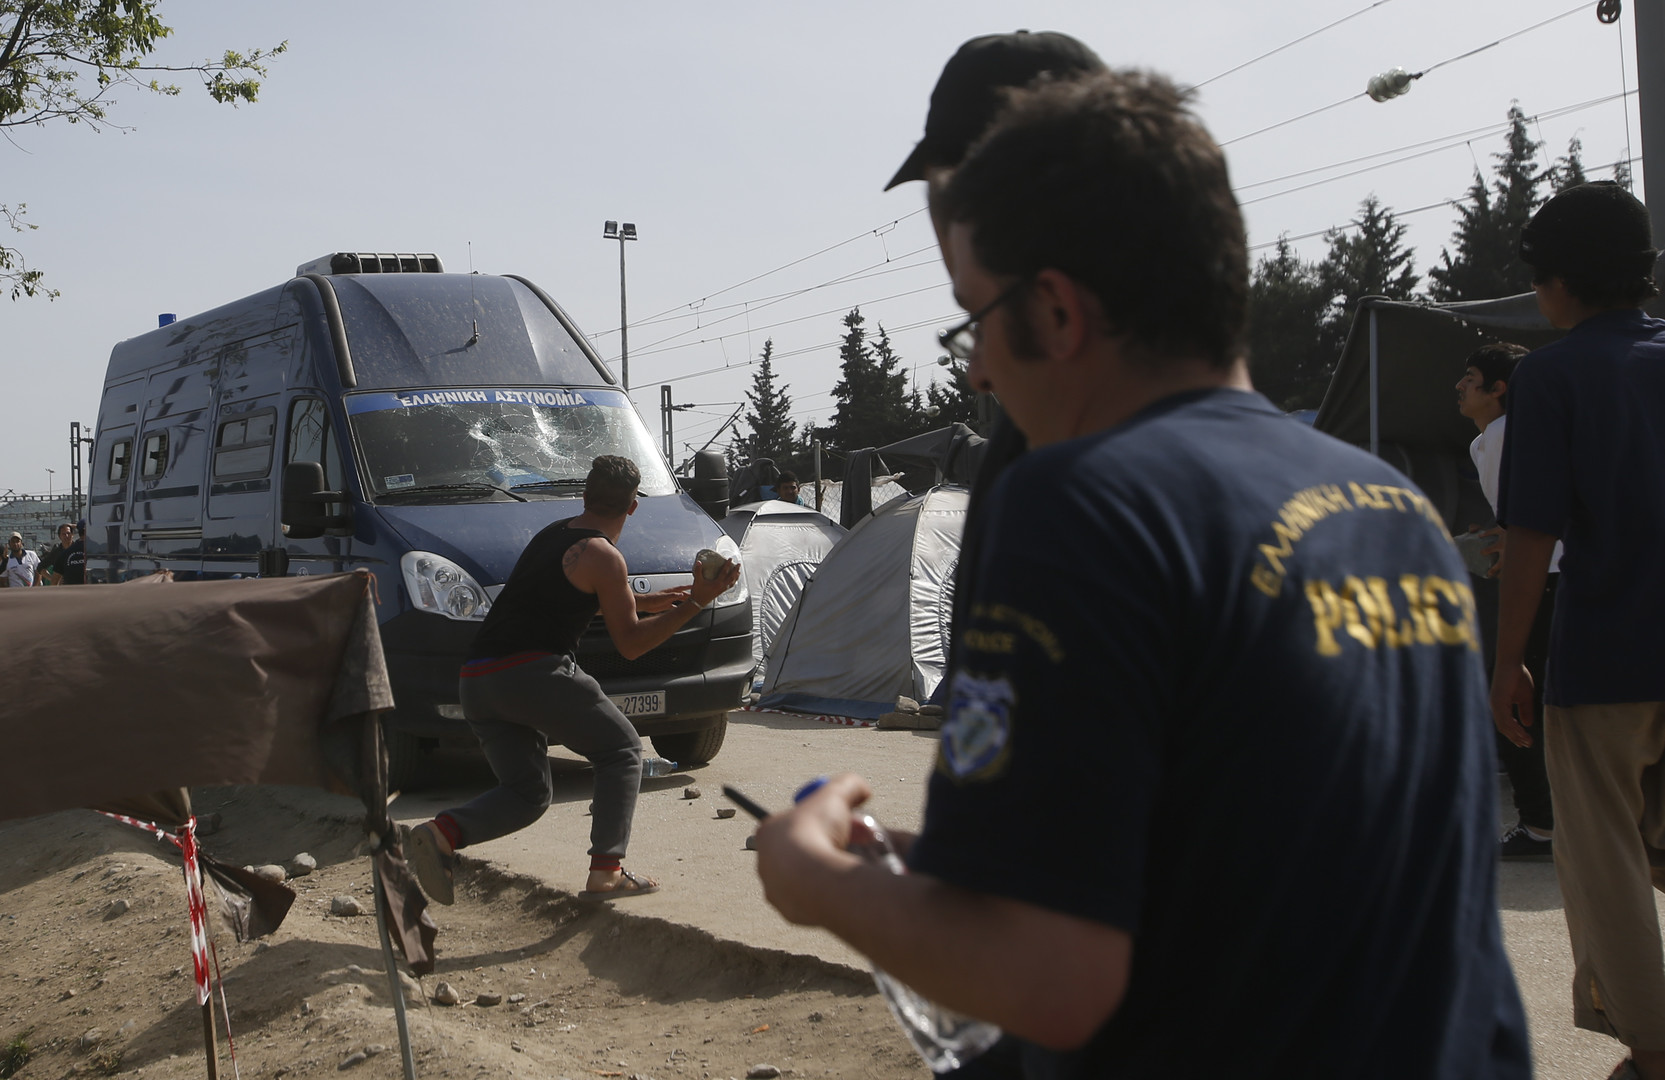 La police grecque percute et tue un réfugié dans un camp (PHOTO, VIDEO)